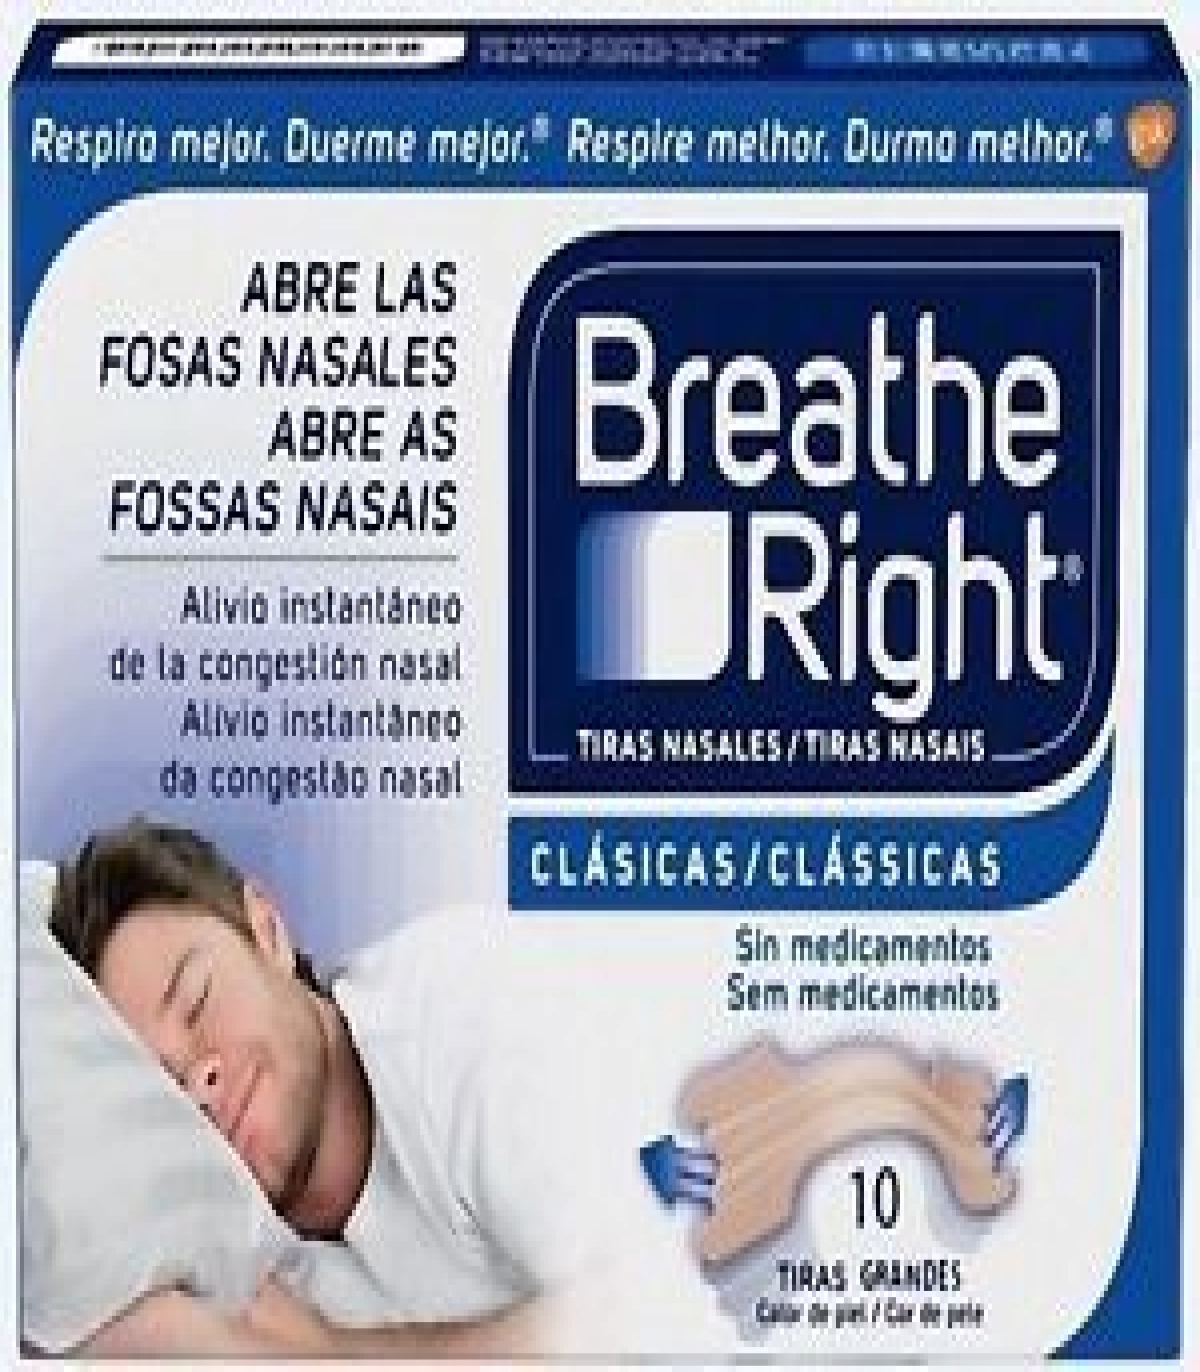 Breathe Right Respira Mejor tiras nasales niños 10uds